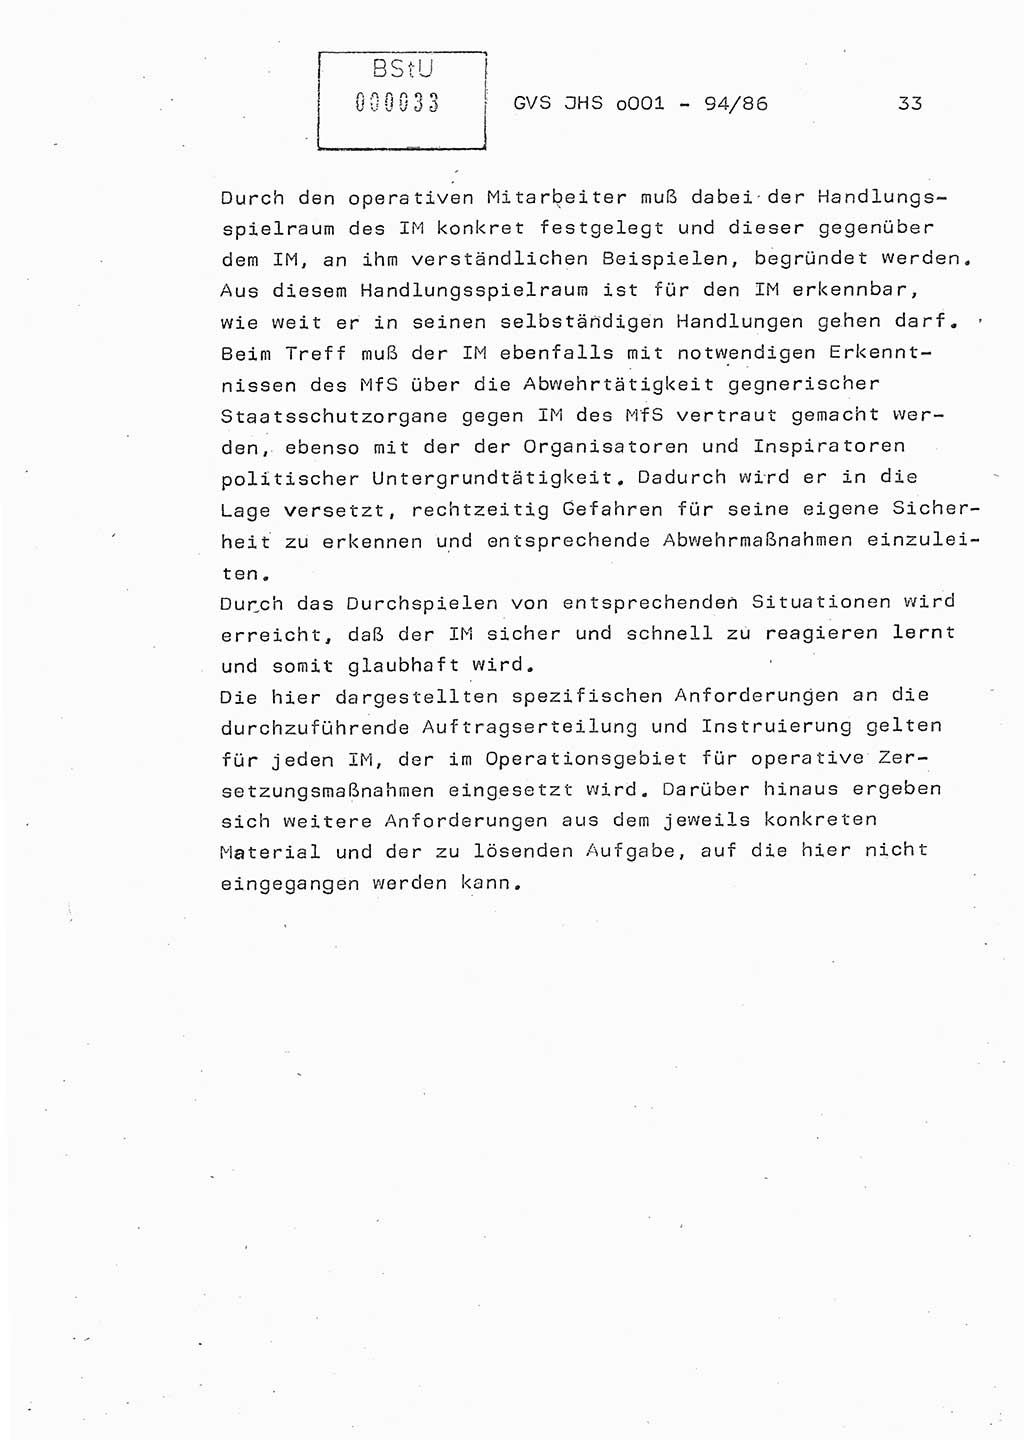 Diplomarbeit Oberleutnant Volkmar Pechmann (HA ⅩⅩ/5), Ministerium für Staatssicherheit (MfS) [Deutsche Demokratische Republik (DDR)], Juristische Hochschule (JHS), Geheime Verschlußsache (GVS) o001-94/86, Potsdam 1986, Blatt 33 (Dipl.-Arb. MfS DDR JHS GVS o001-94/86 1986, Bl. 33)